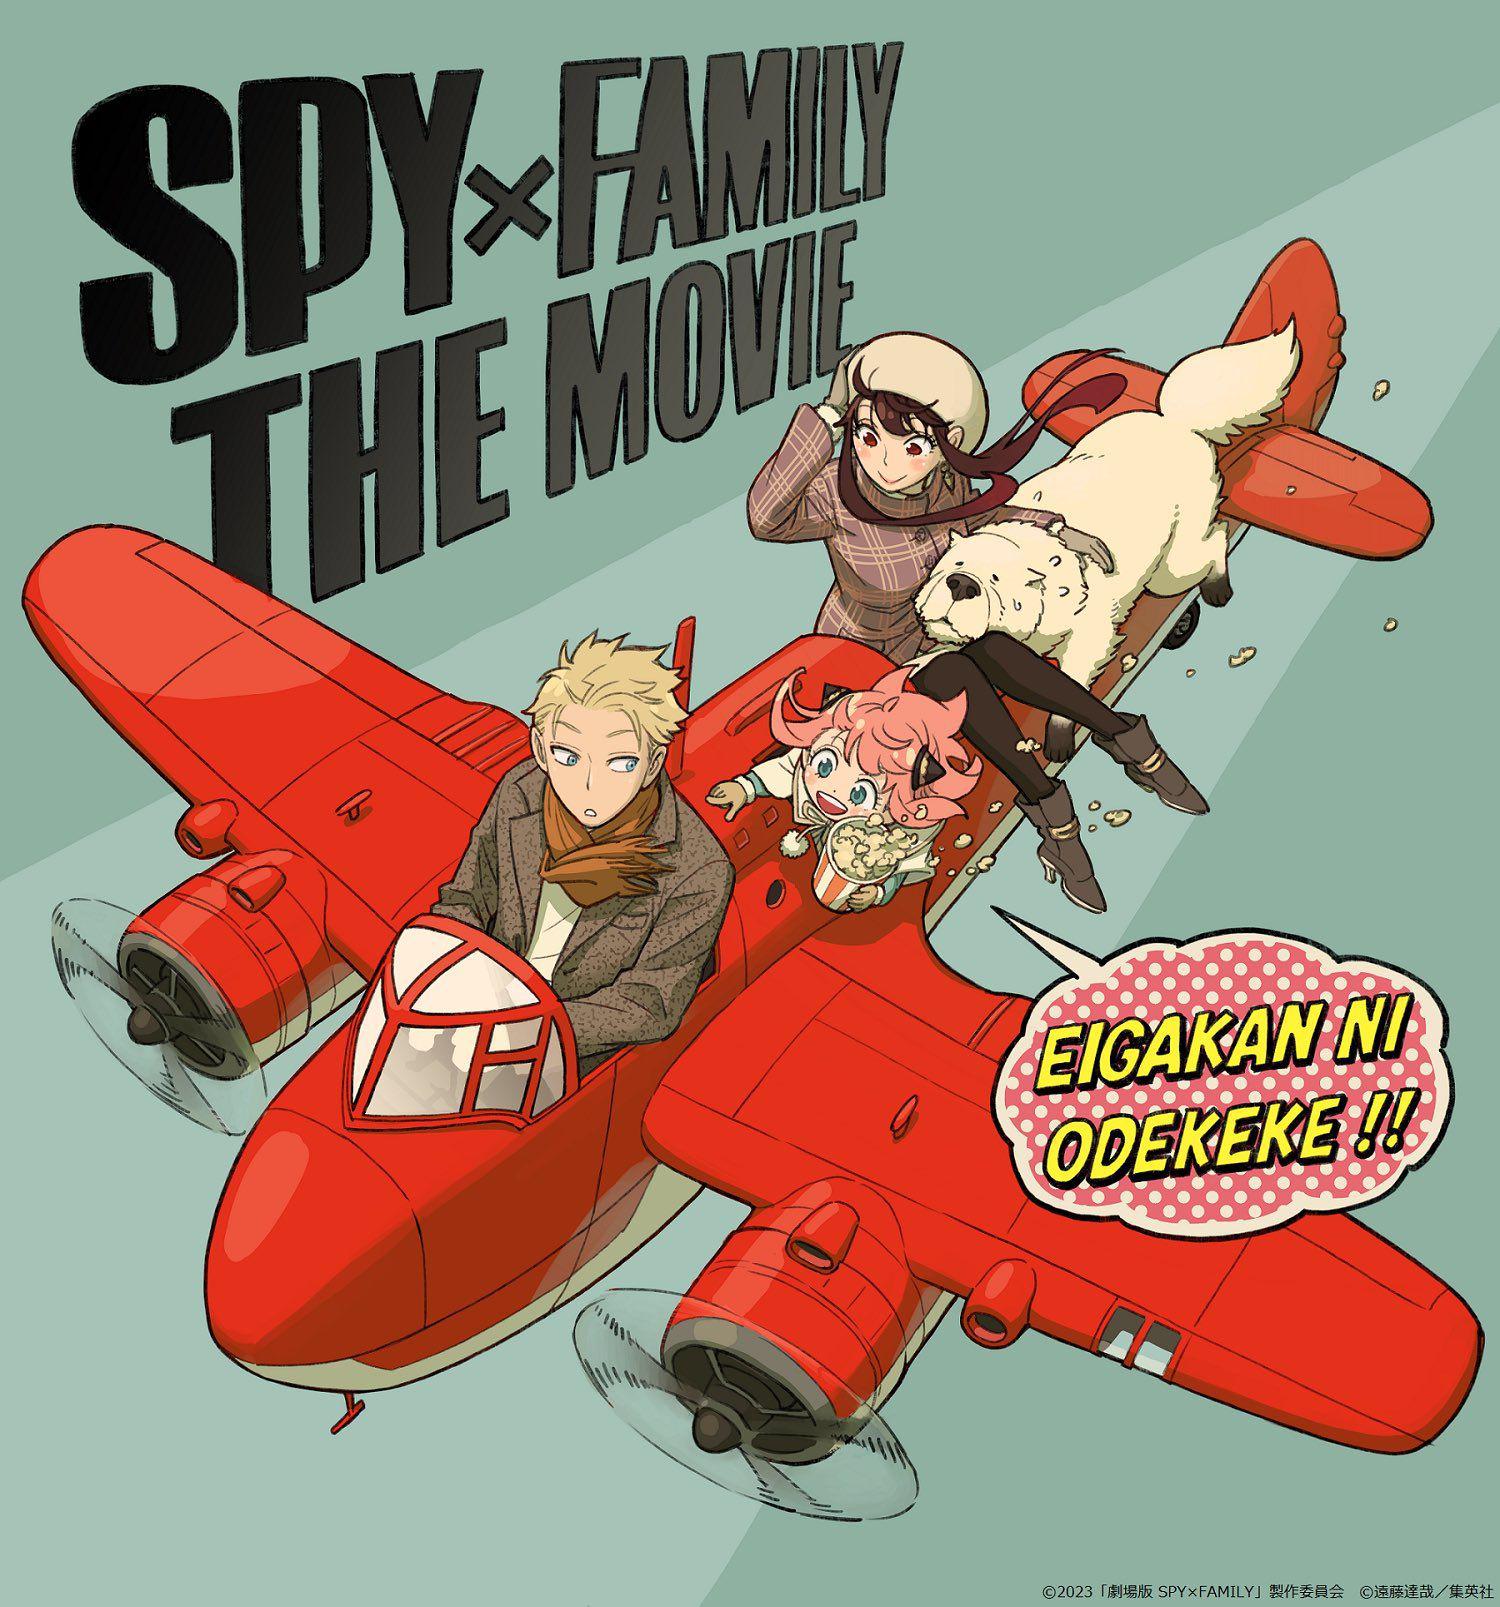 Família Spy X: 2ª temporada e filme anunciados